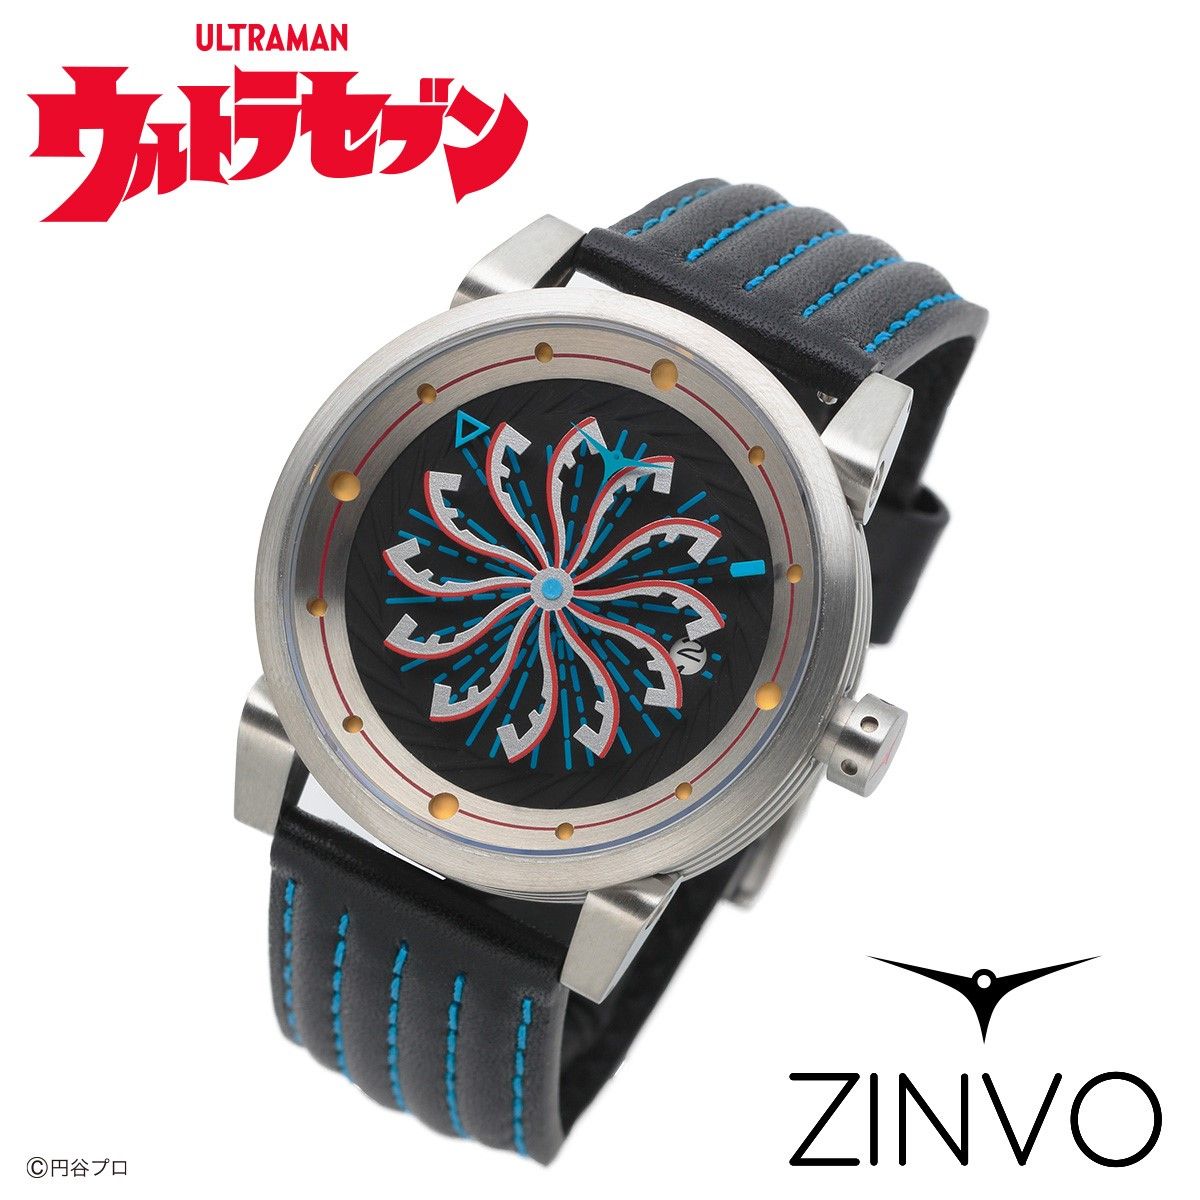 ウルトラセブン ZINVO 腕時計ーULTRASEVEN Limited Editionー